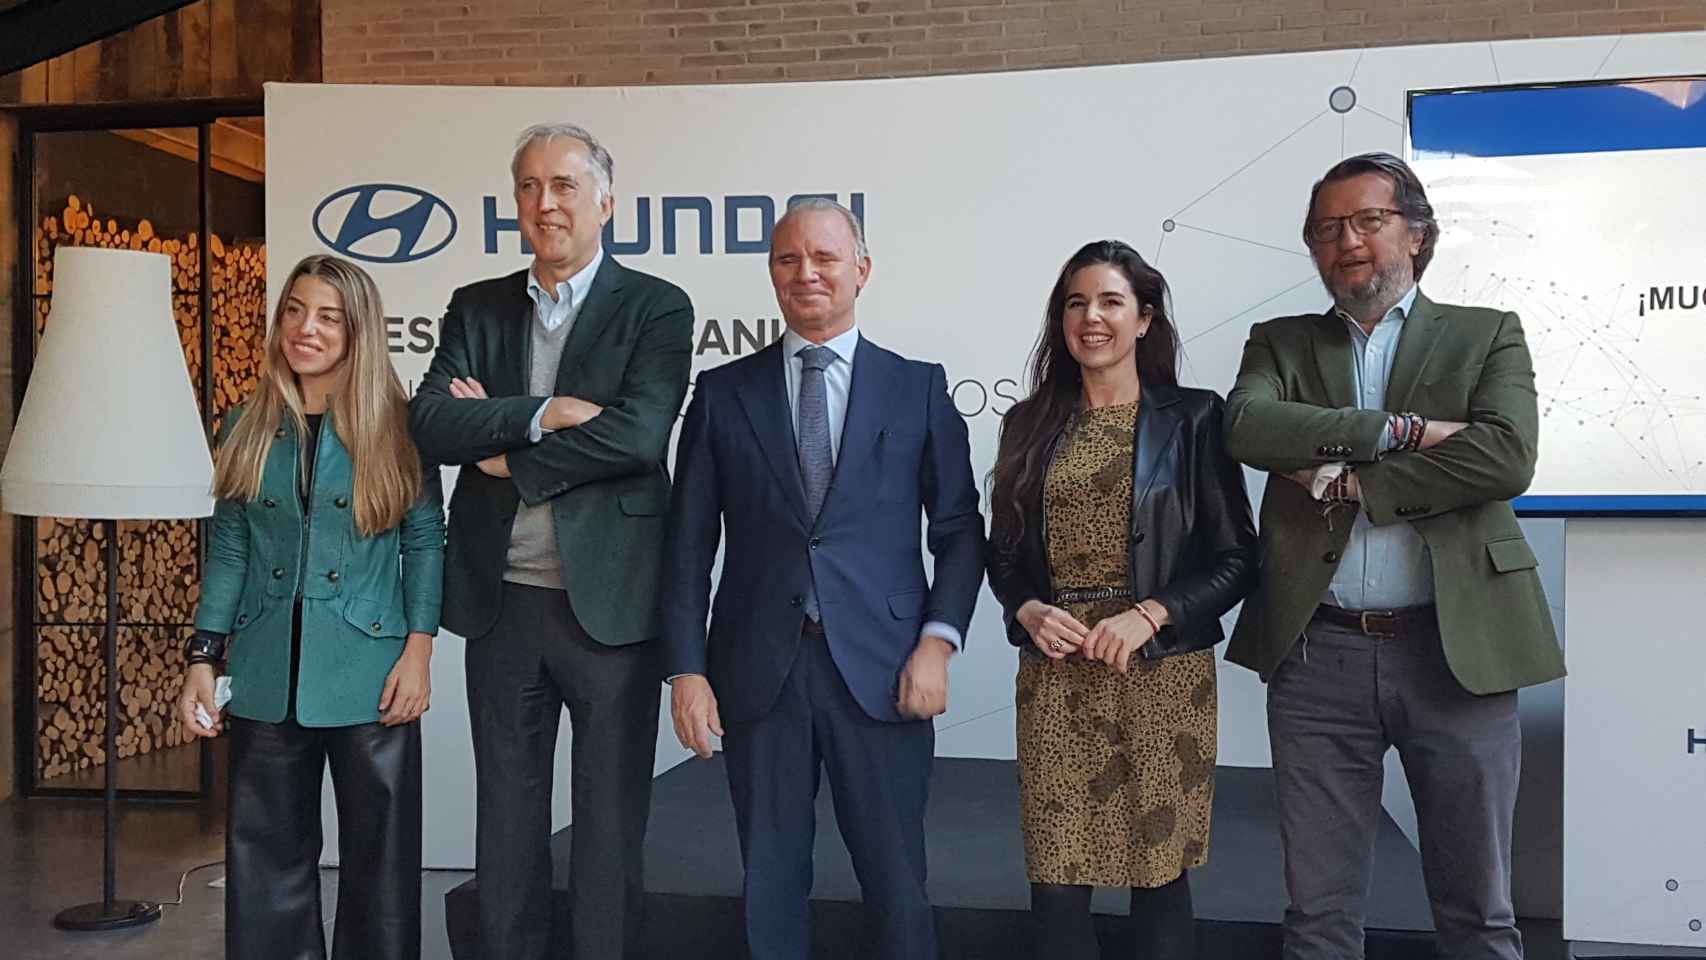 Paula Pastor, Juanjo Martínez Saavedra, Leopoldo Satrústegui, Elena Gris y Santiago de la Rocha, todos ellos de Hyundai España.